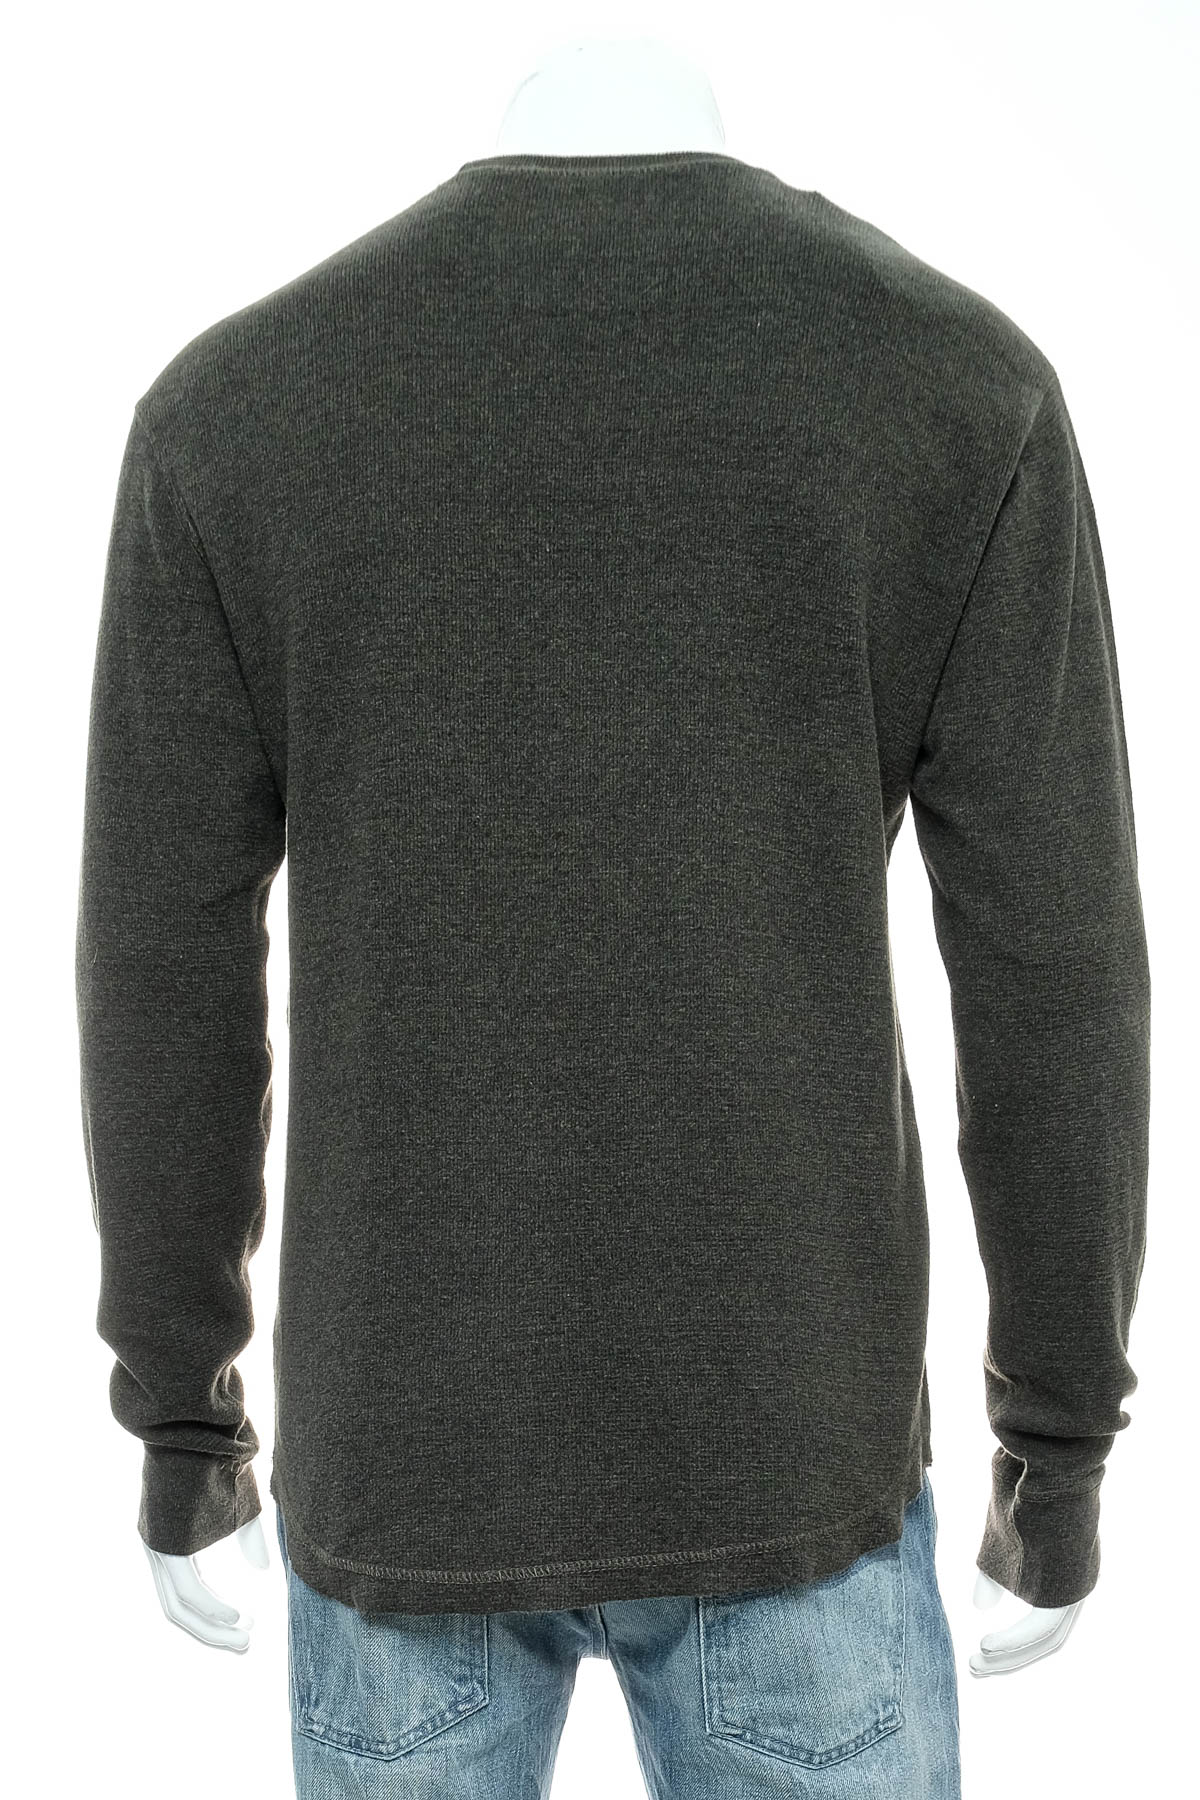 Men's sweater - FOOT LOCKER - 1